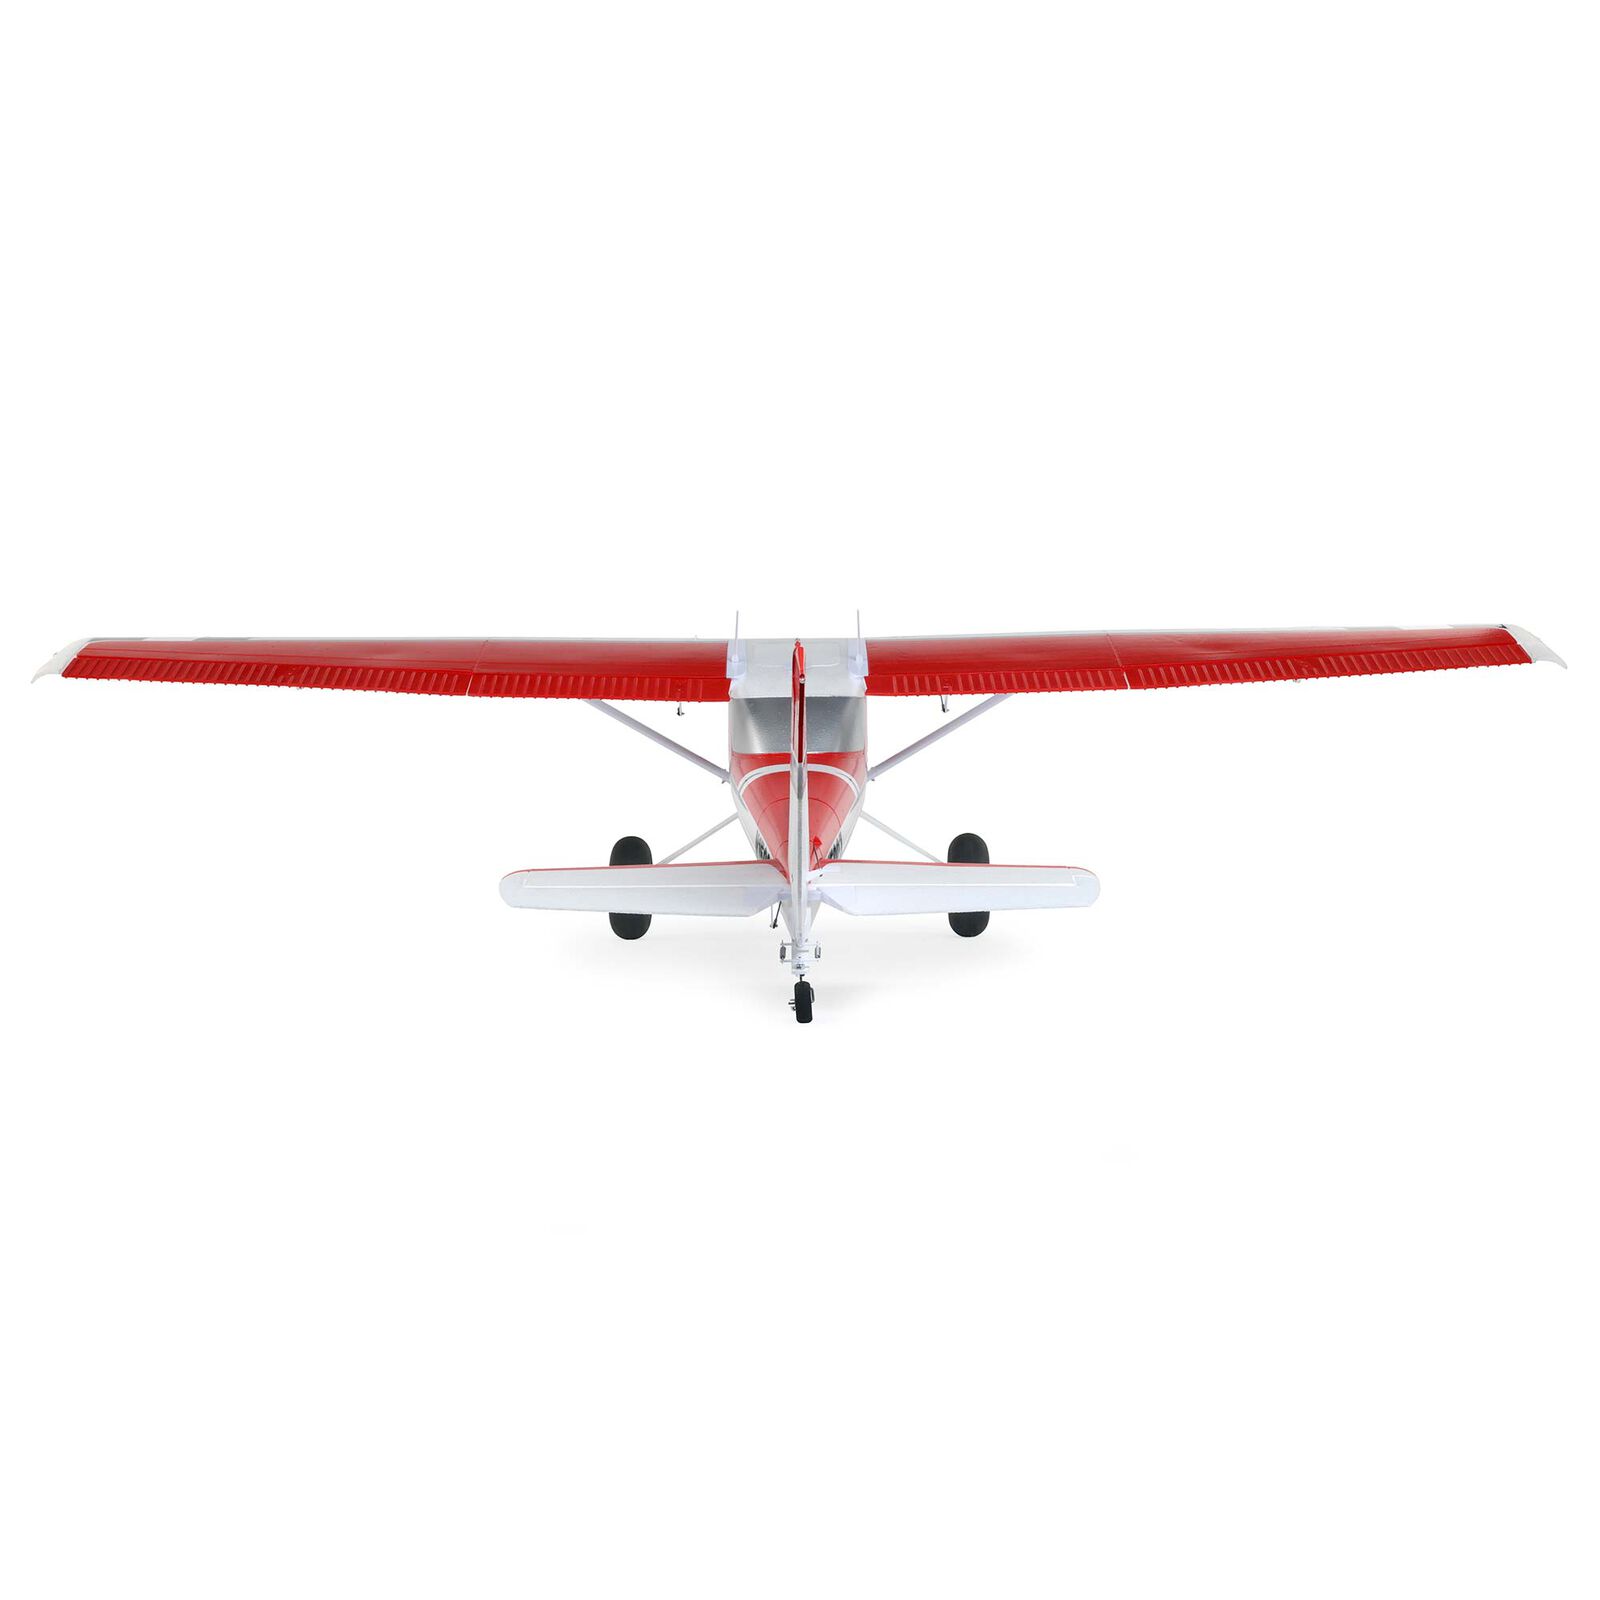 E-flite Carbon-Z Cessna | BNF Basic Horizon Hobby 150T 2.1m